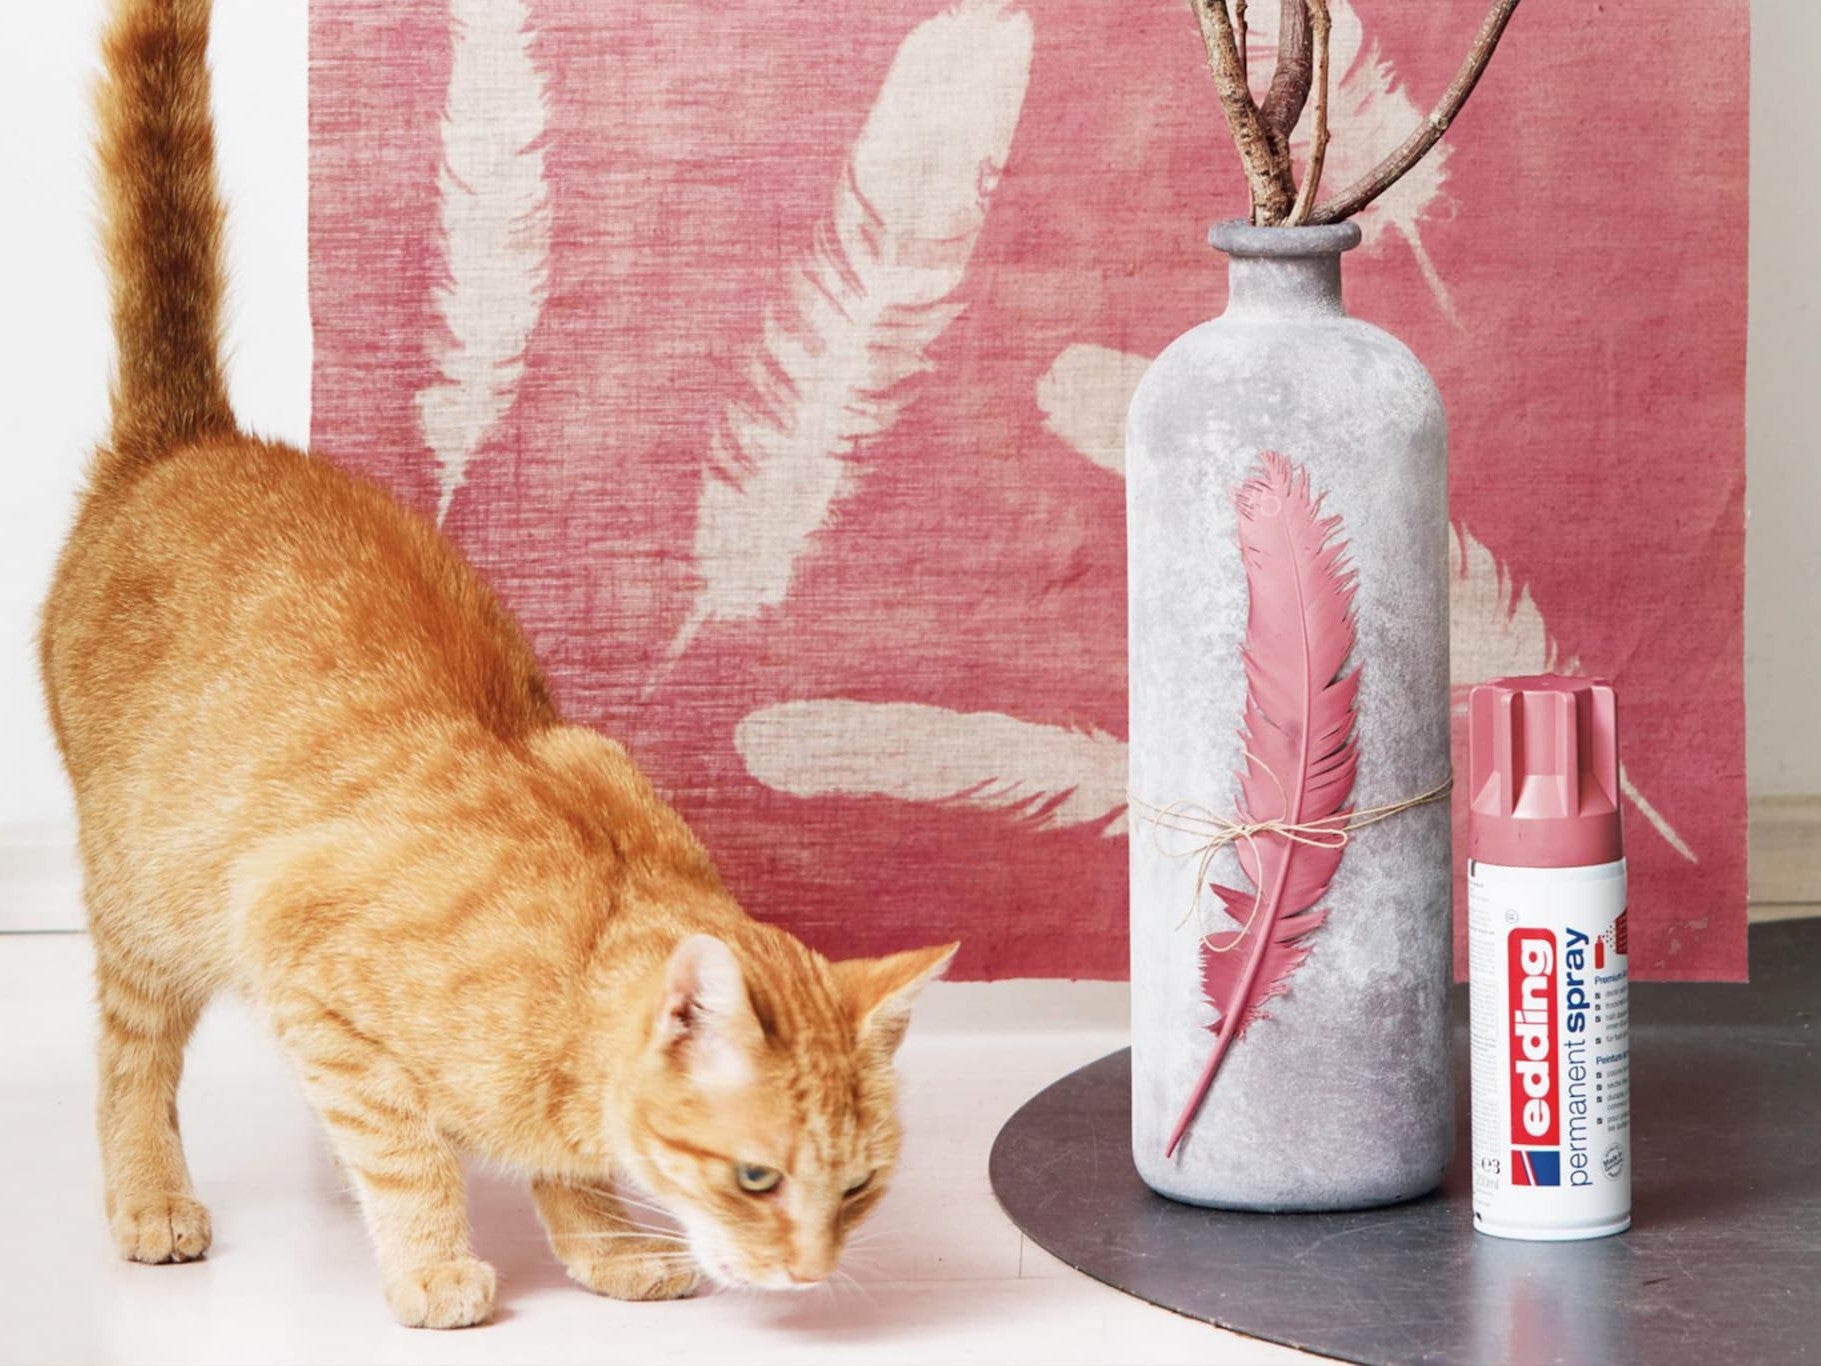 Eine neugierige rote Katze schnuppert an einer grauen Vase, die mit einer roten Feder geschmückt ist. Neben ihr steht eine passende rote Dose „edding 5200 Permanentspray Acryllack Pastell & sanfte Farben“ vor einer großen rosa Leinwand mit Federaufdruck.